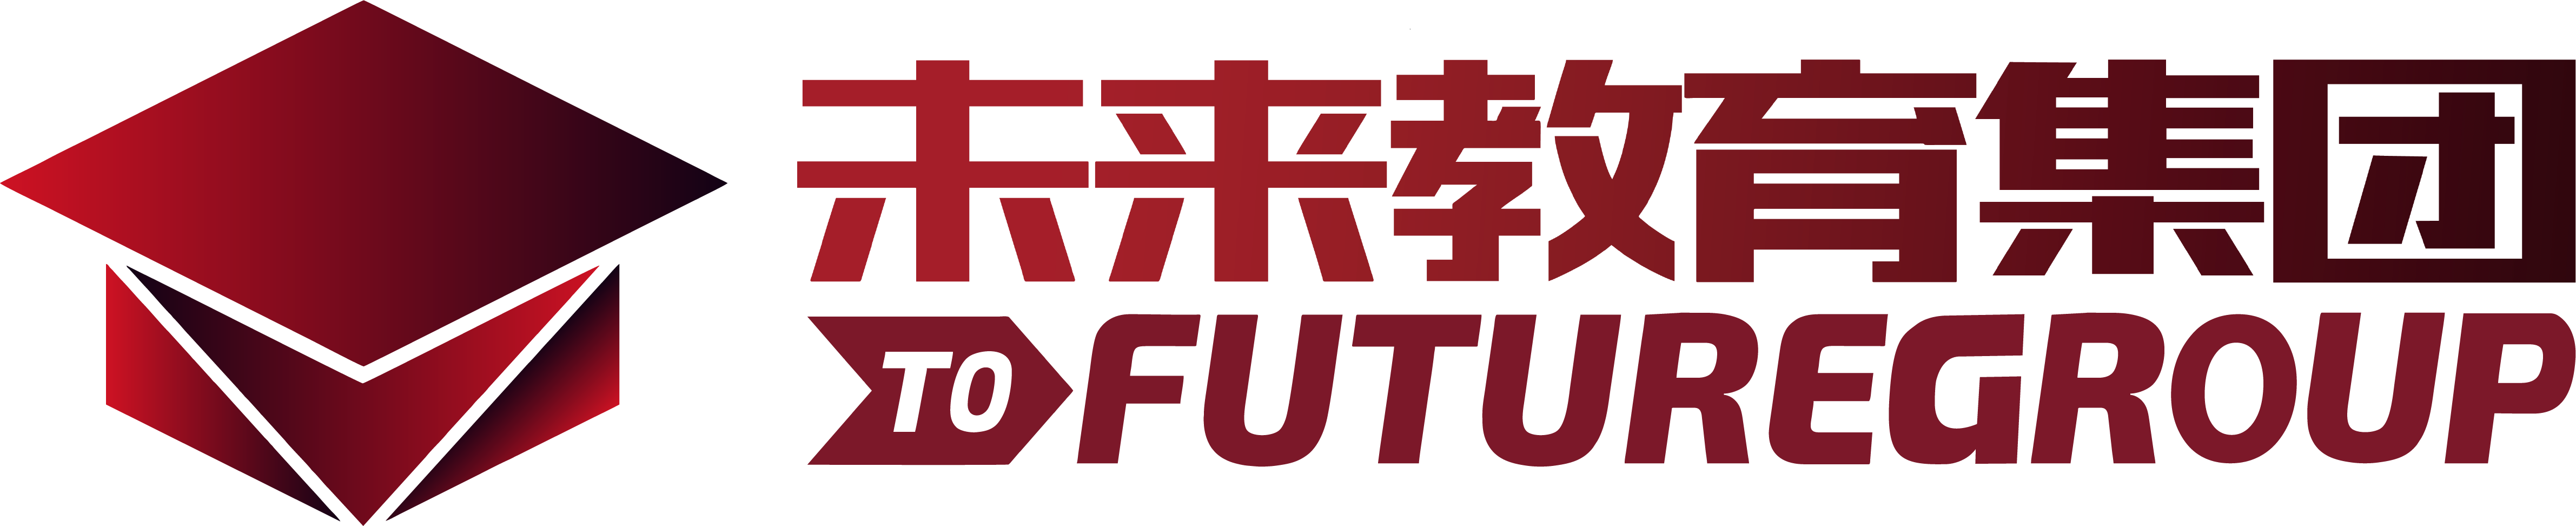 tofuture logo